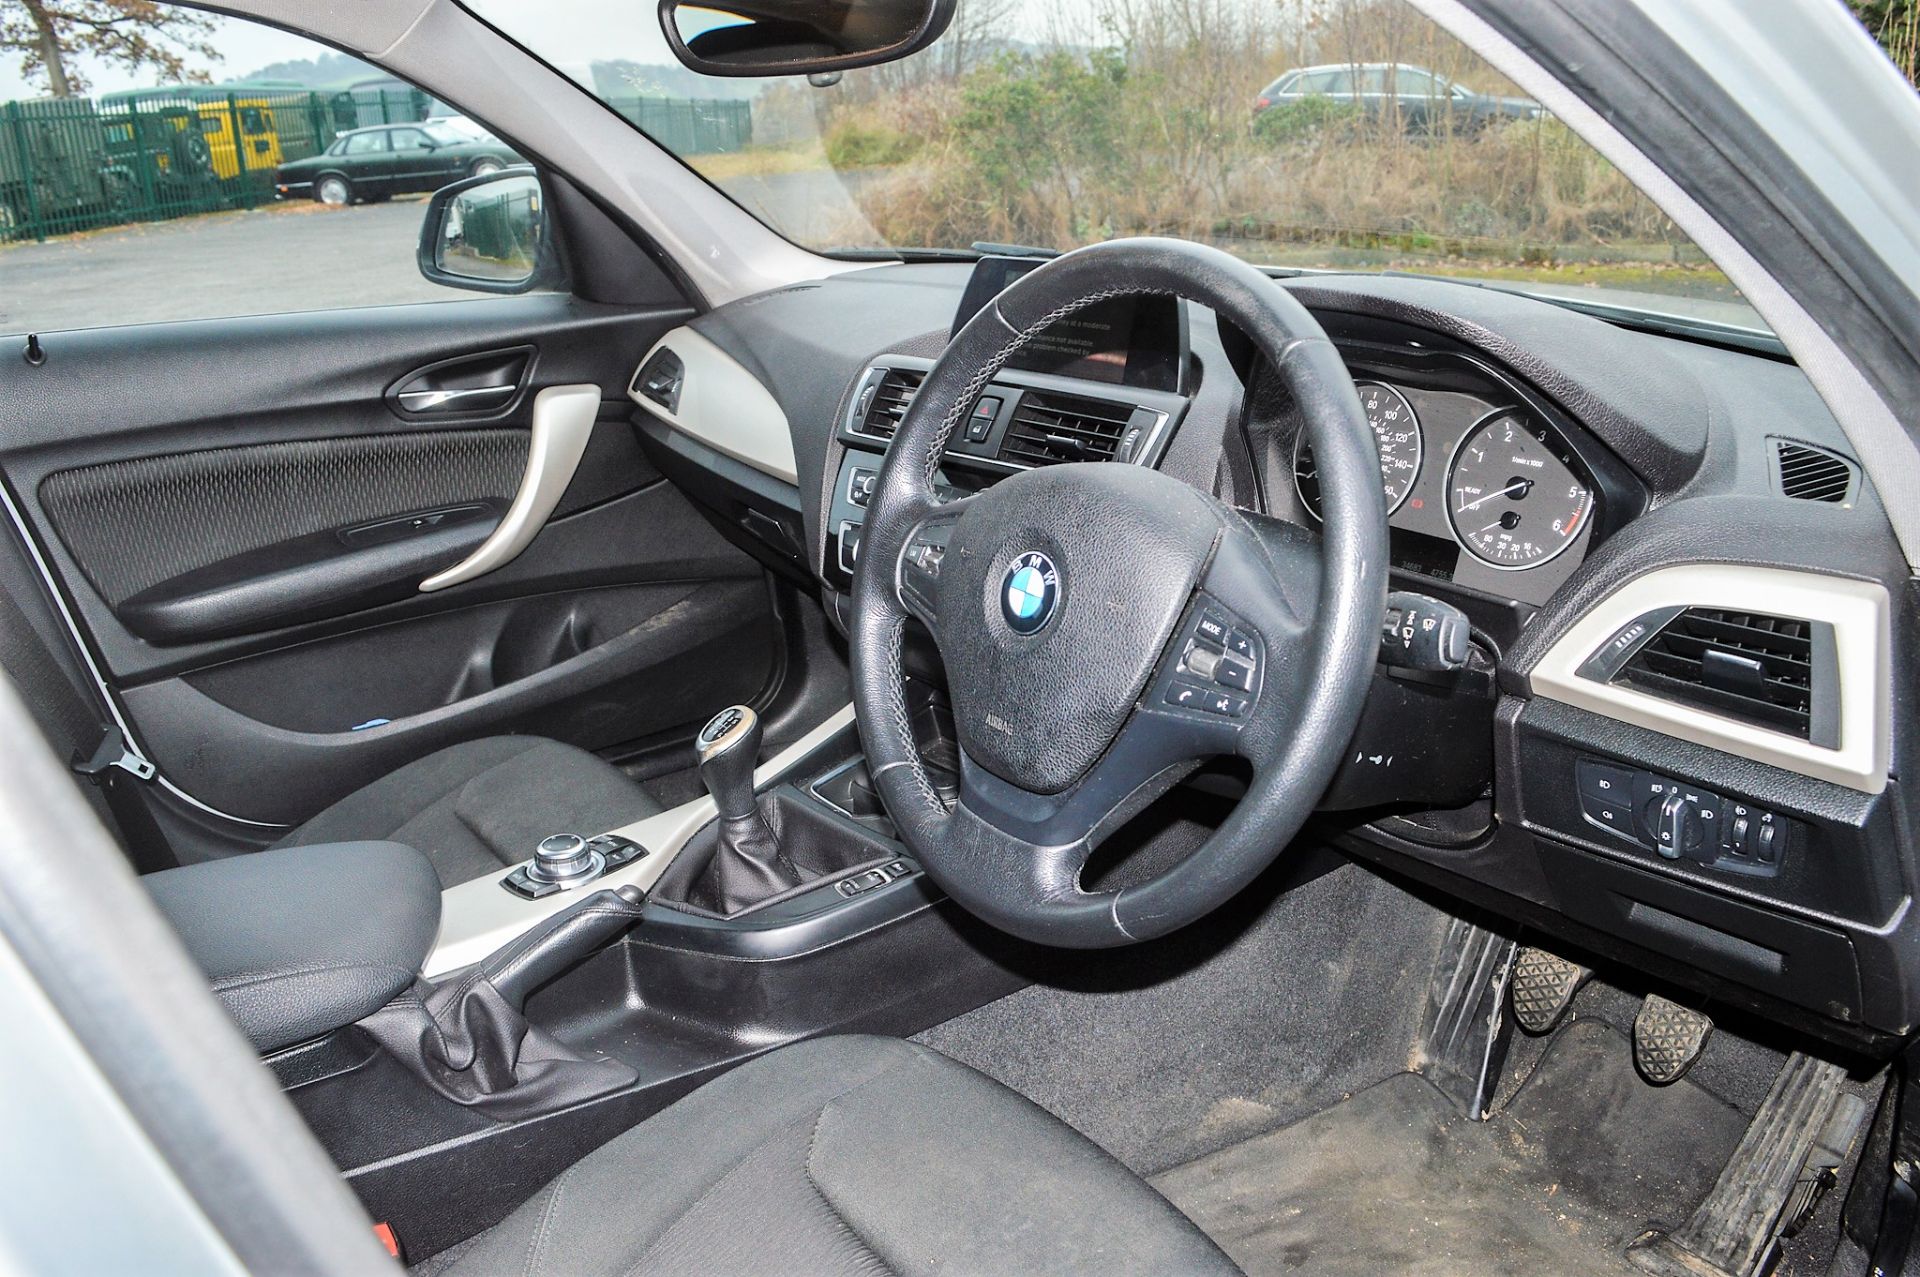 BMW 116d SE 1.5 litre diesel manual 5 door hatchback car Registration Number: YE65 PWX Date of - Image 7 of 9